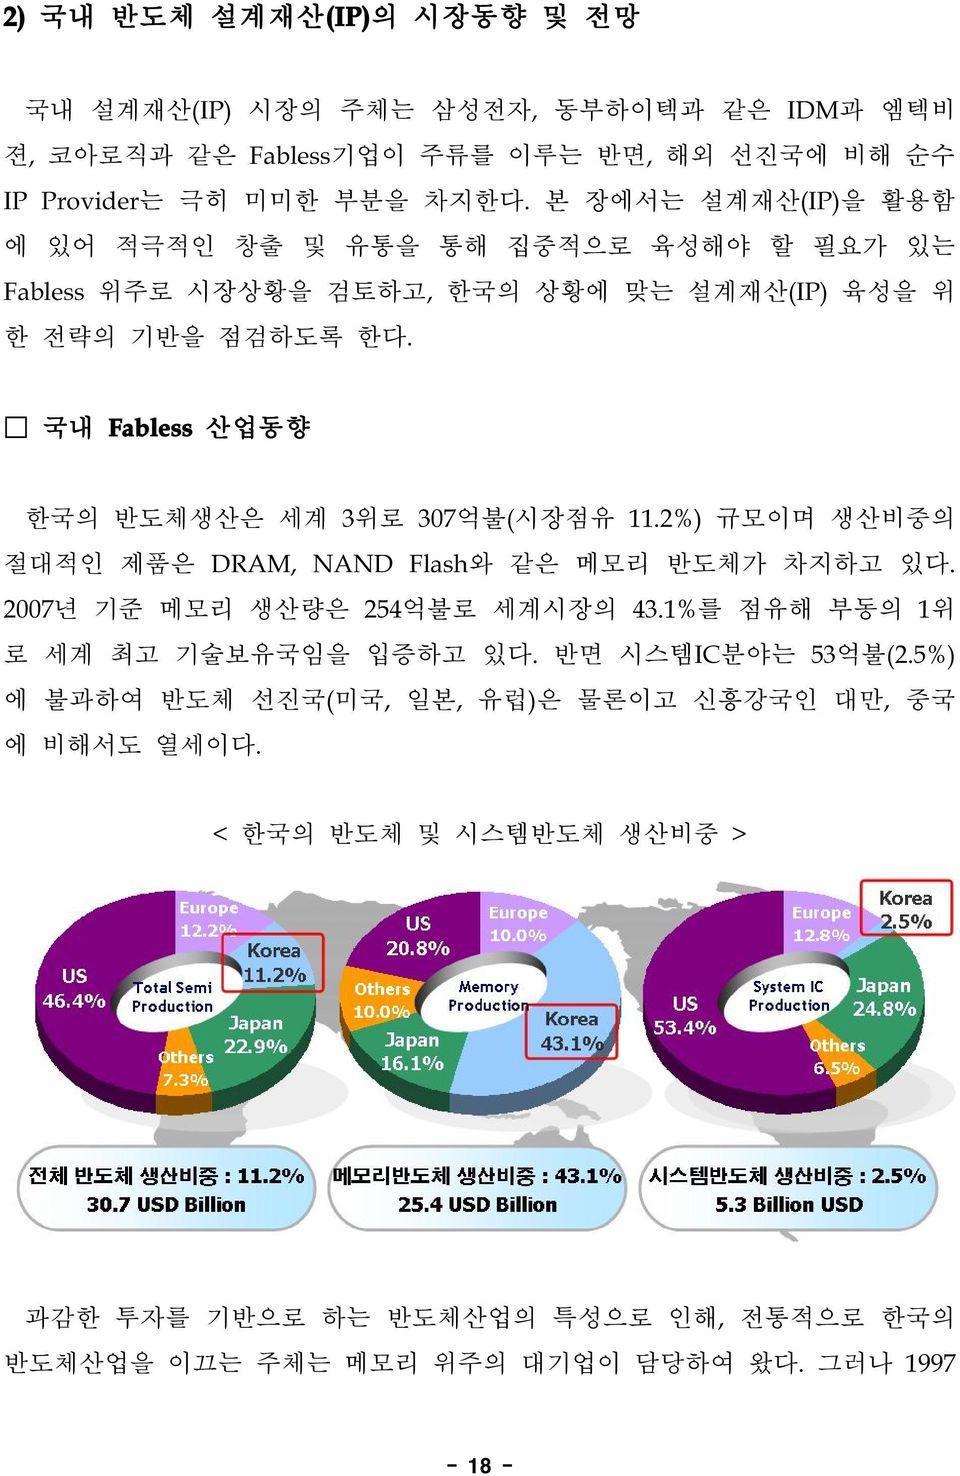 국내 Fabless산업동향 한국의 반도체생산은 세계 3위로 307억불(시장점유 11.2%)규모이며 생산비중의 절대적인 제품은 DRAM,NAND Flash와 같은 메모리 반도체가 차지하고 있다. 2007년 기준 메모리 생산량은 254억불로 세계시장의 43.